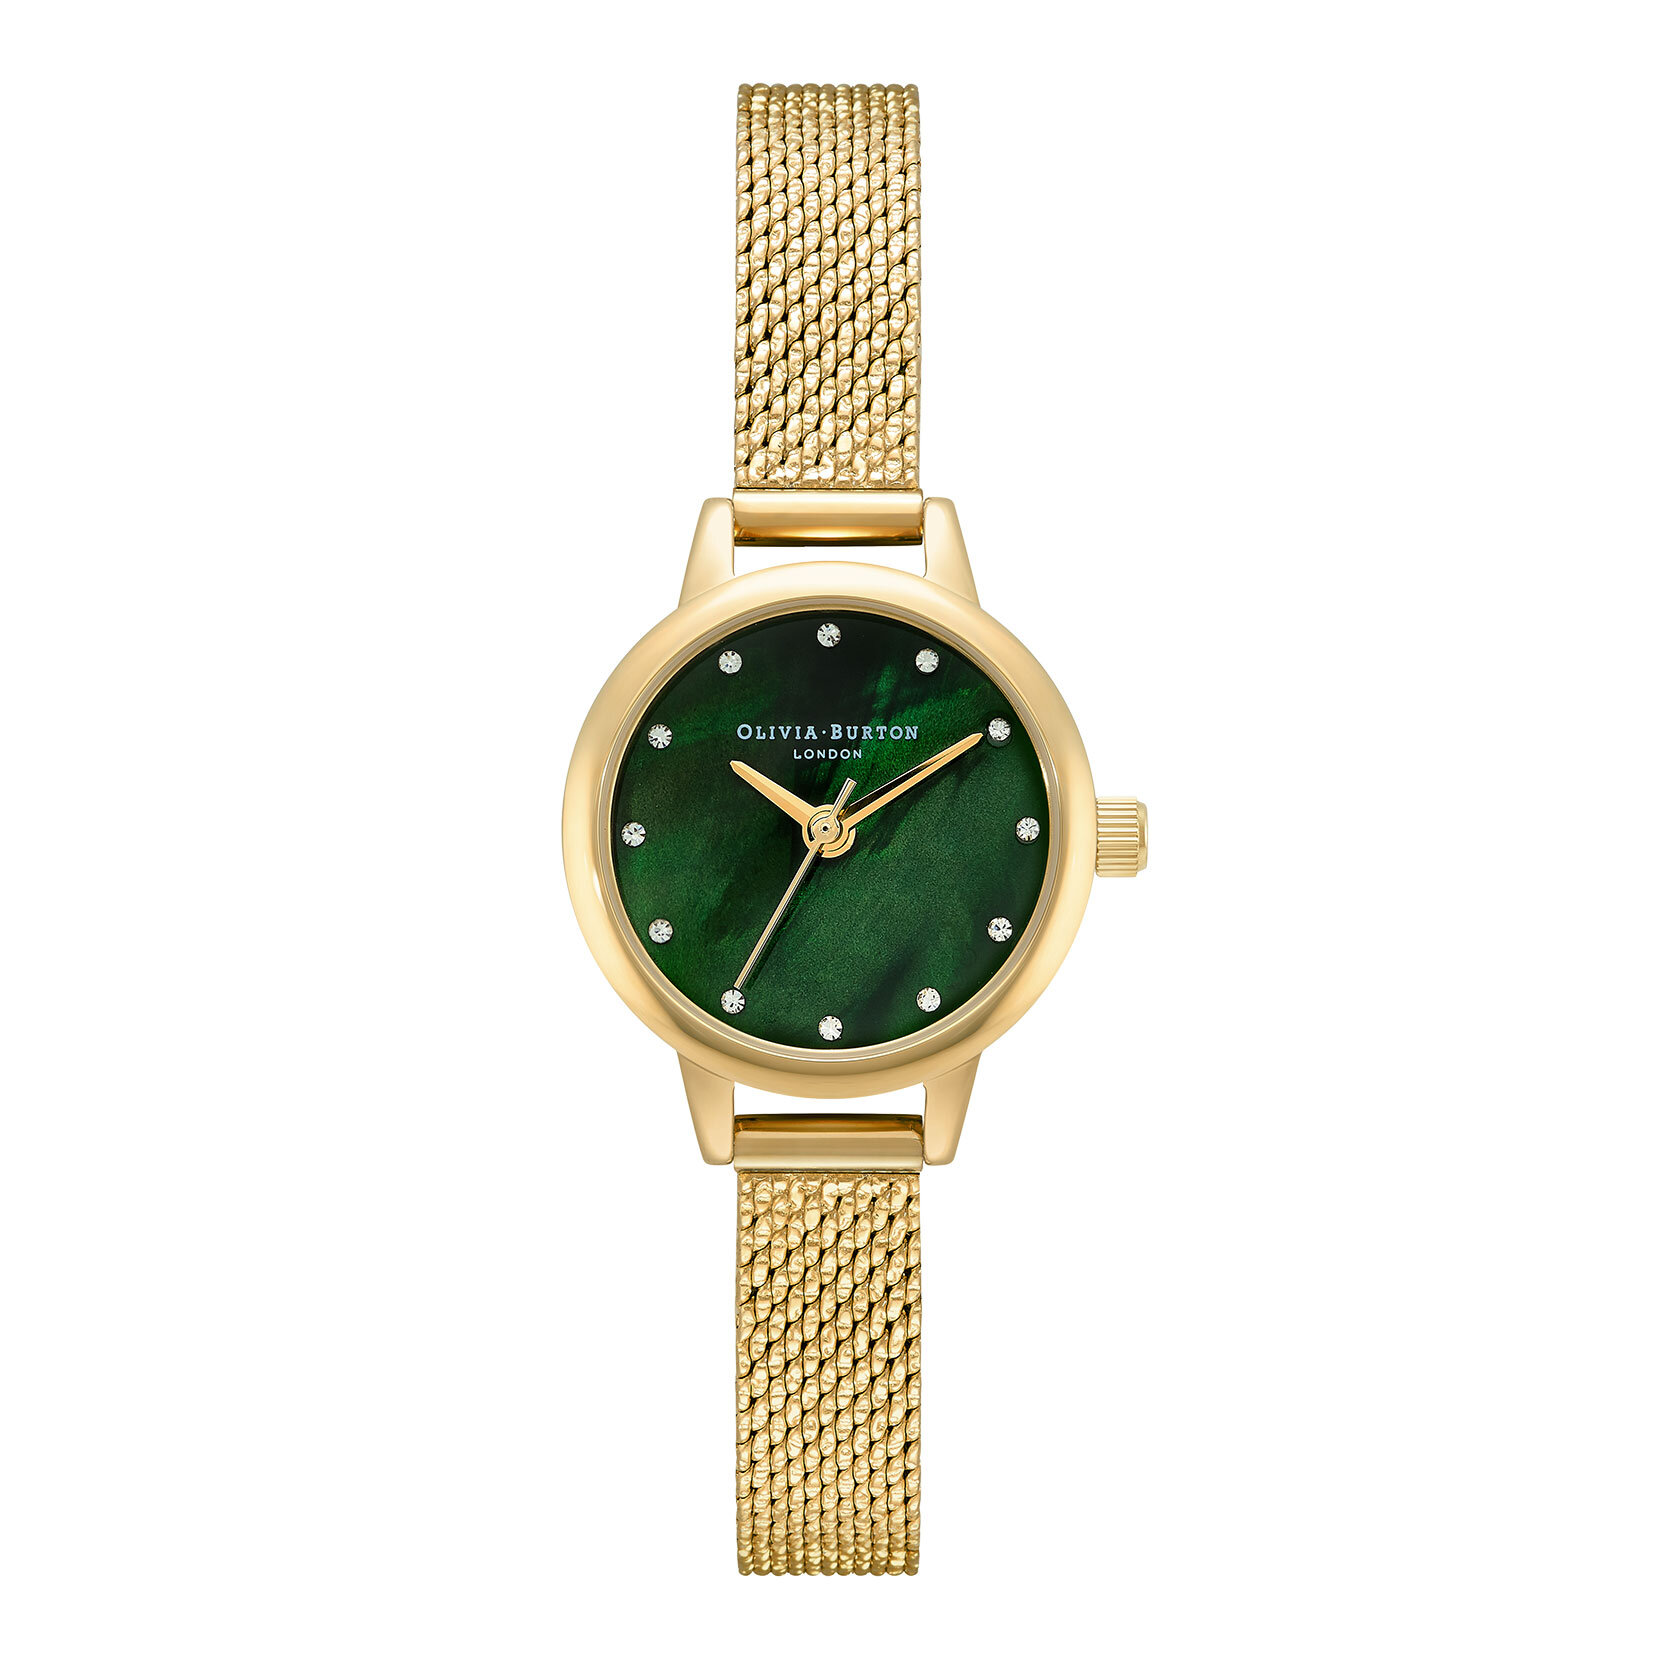 Montre Classic à mini cadran nacre verte et bracelet milanais or